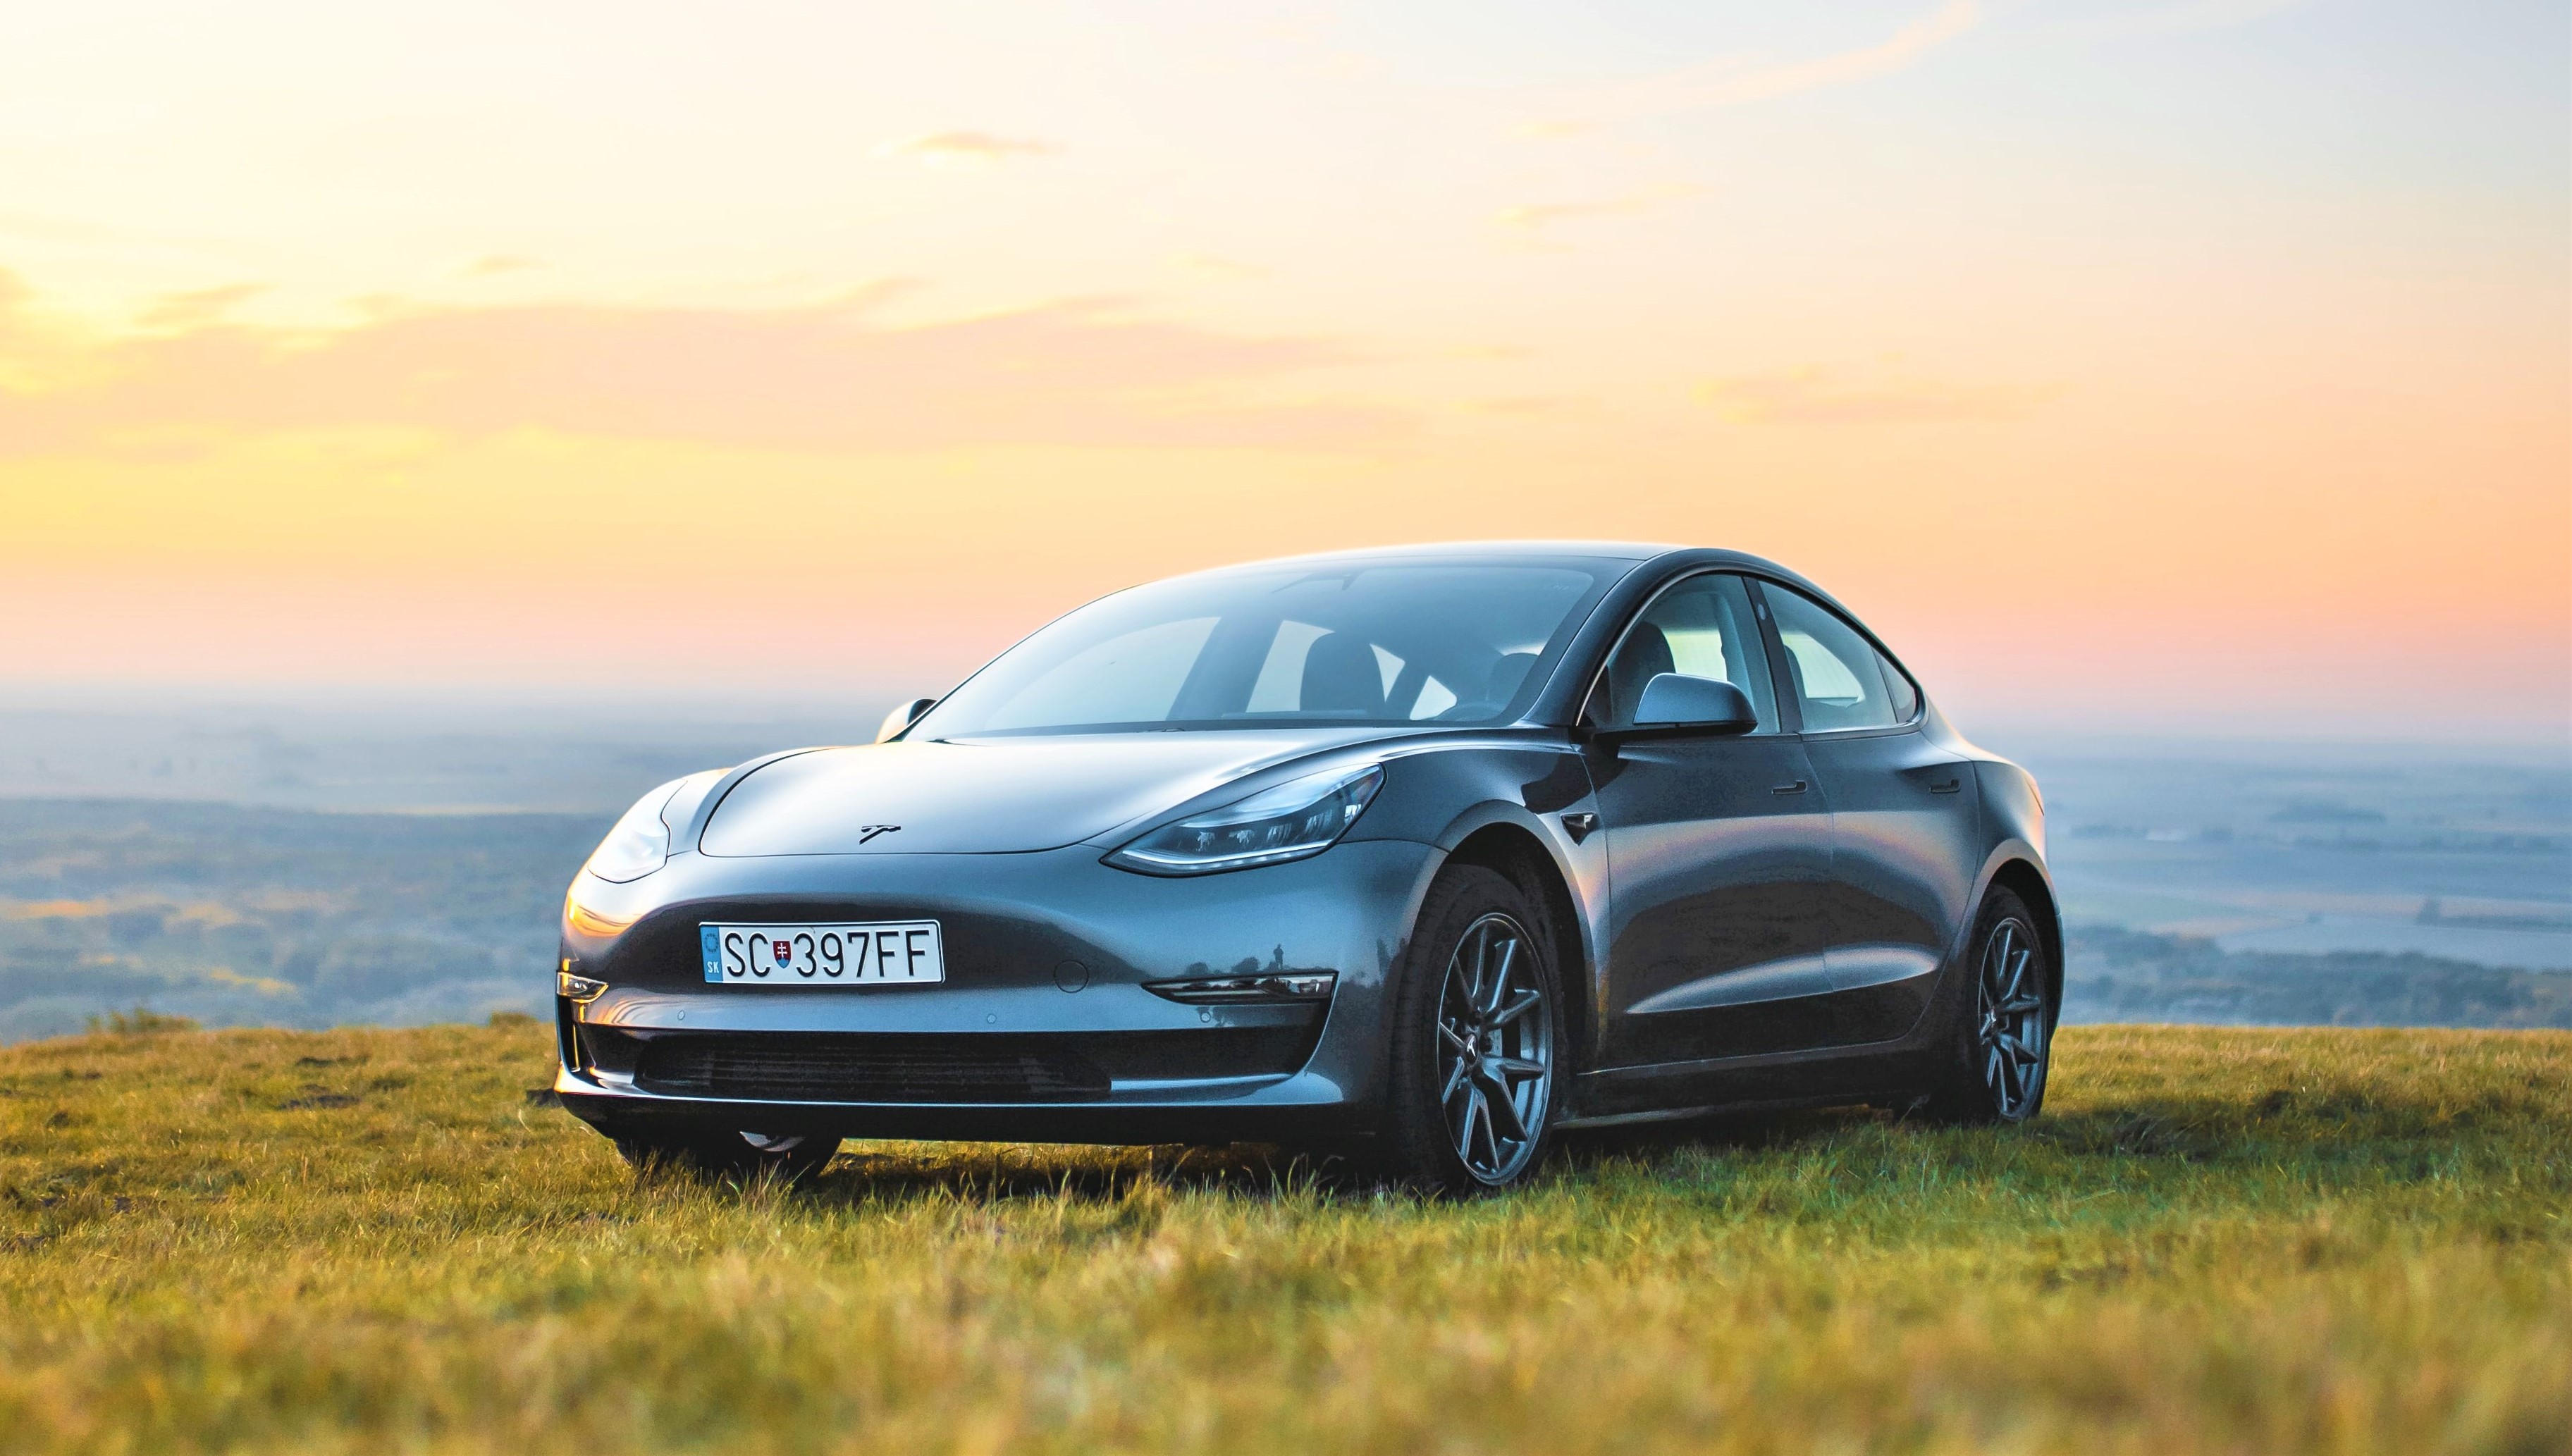 Tesla delivered 254k cars in Q2